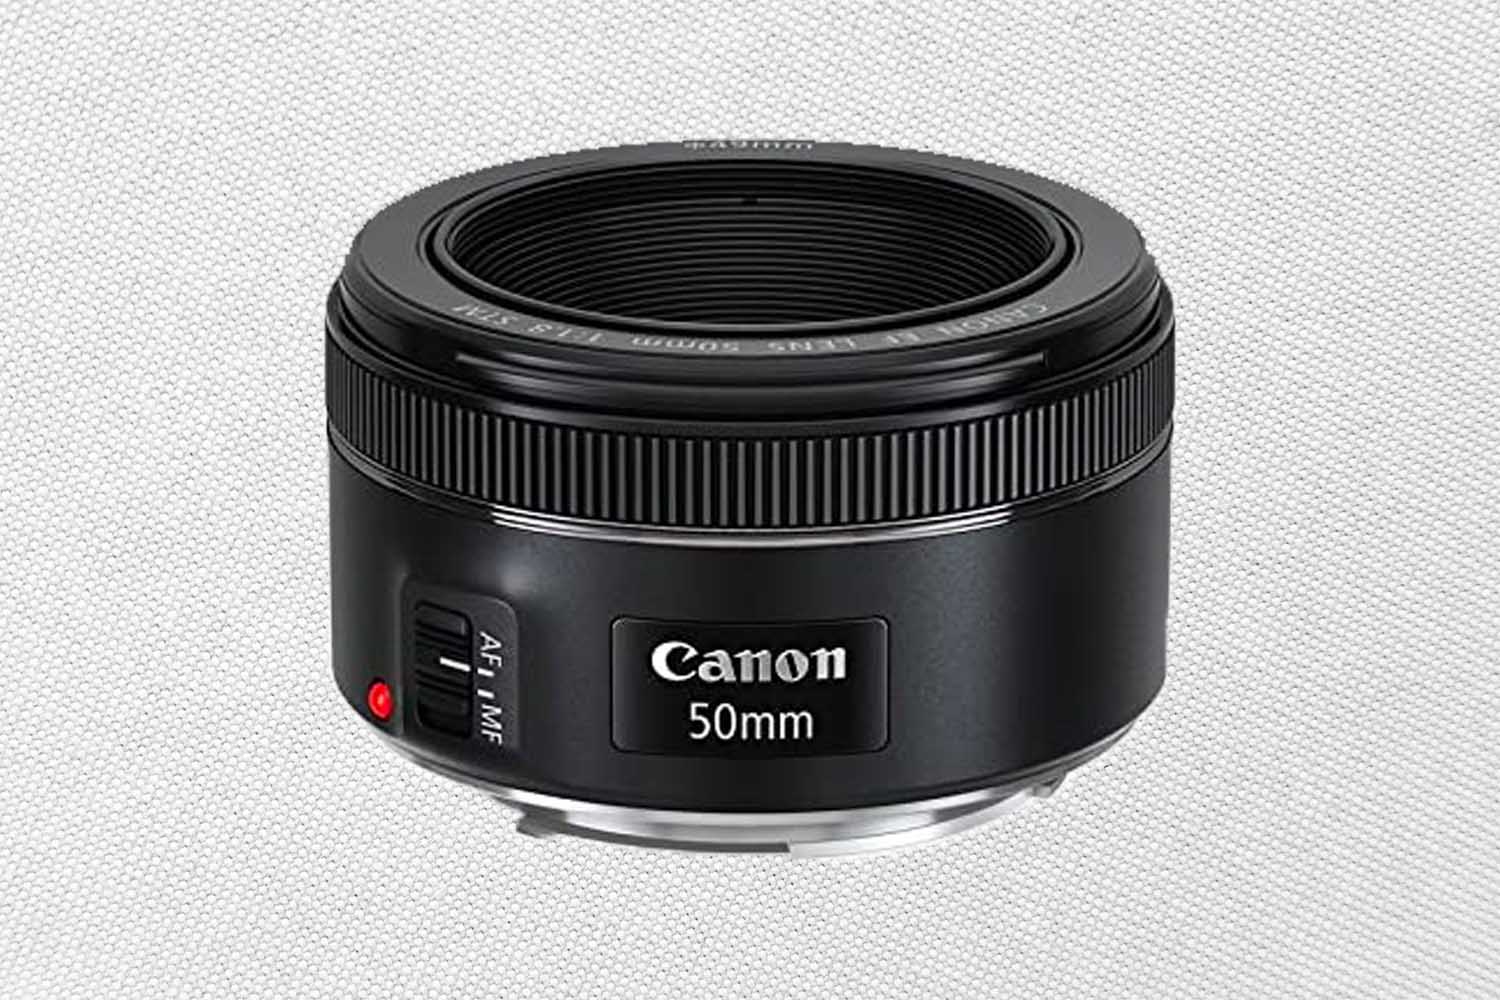 Canon EF 50mm f/1.8 STM Lens International Version